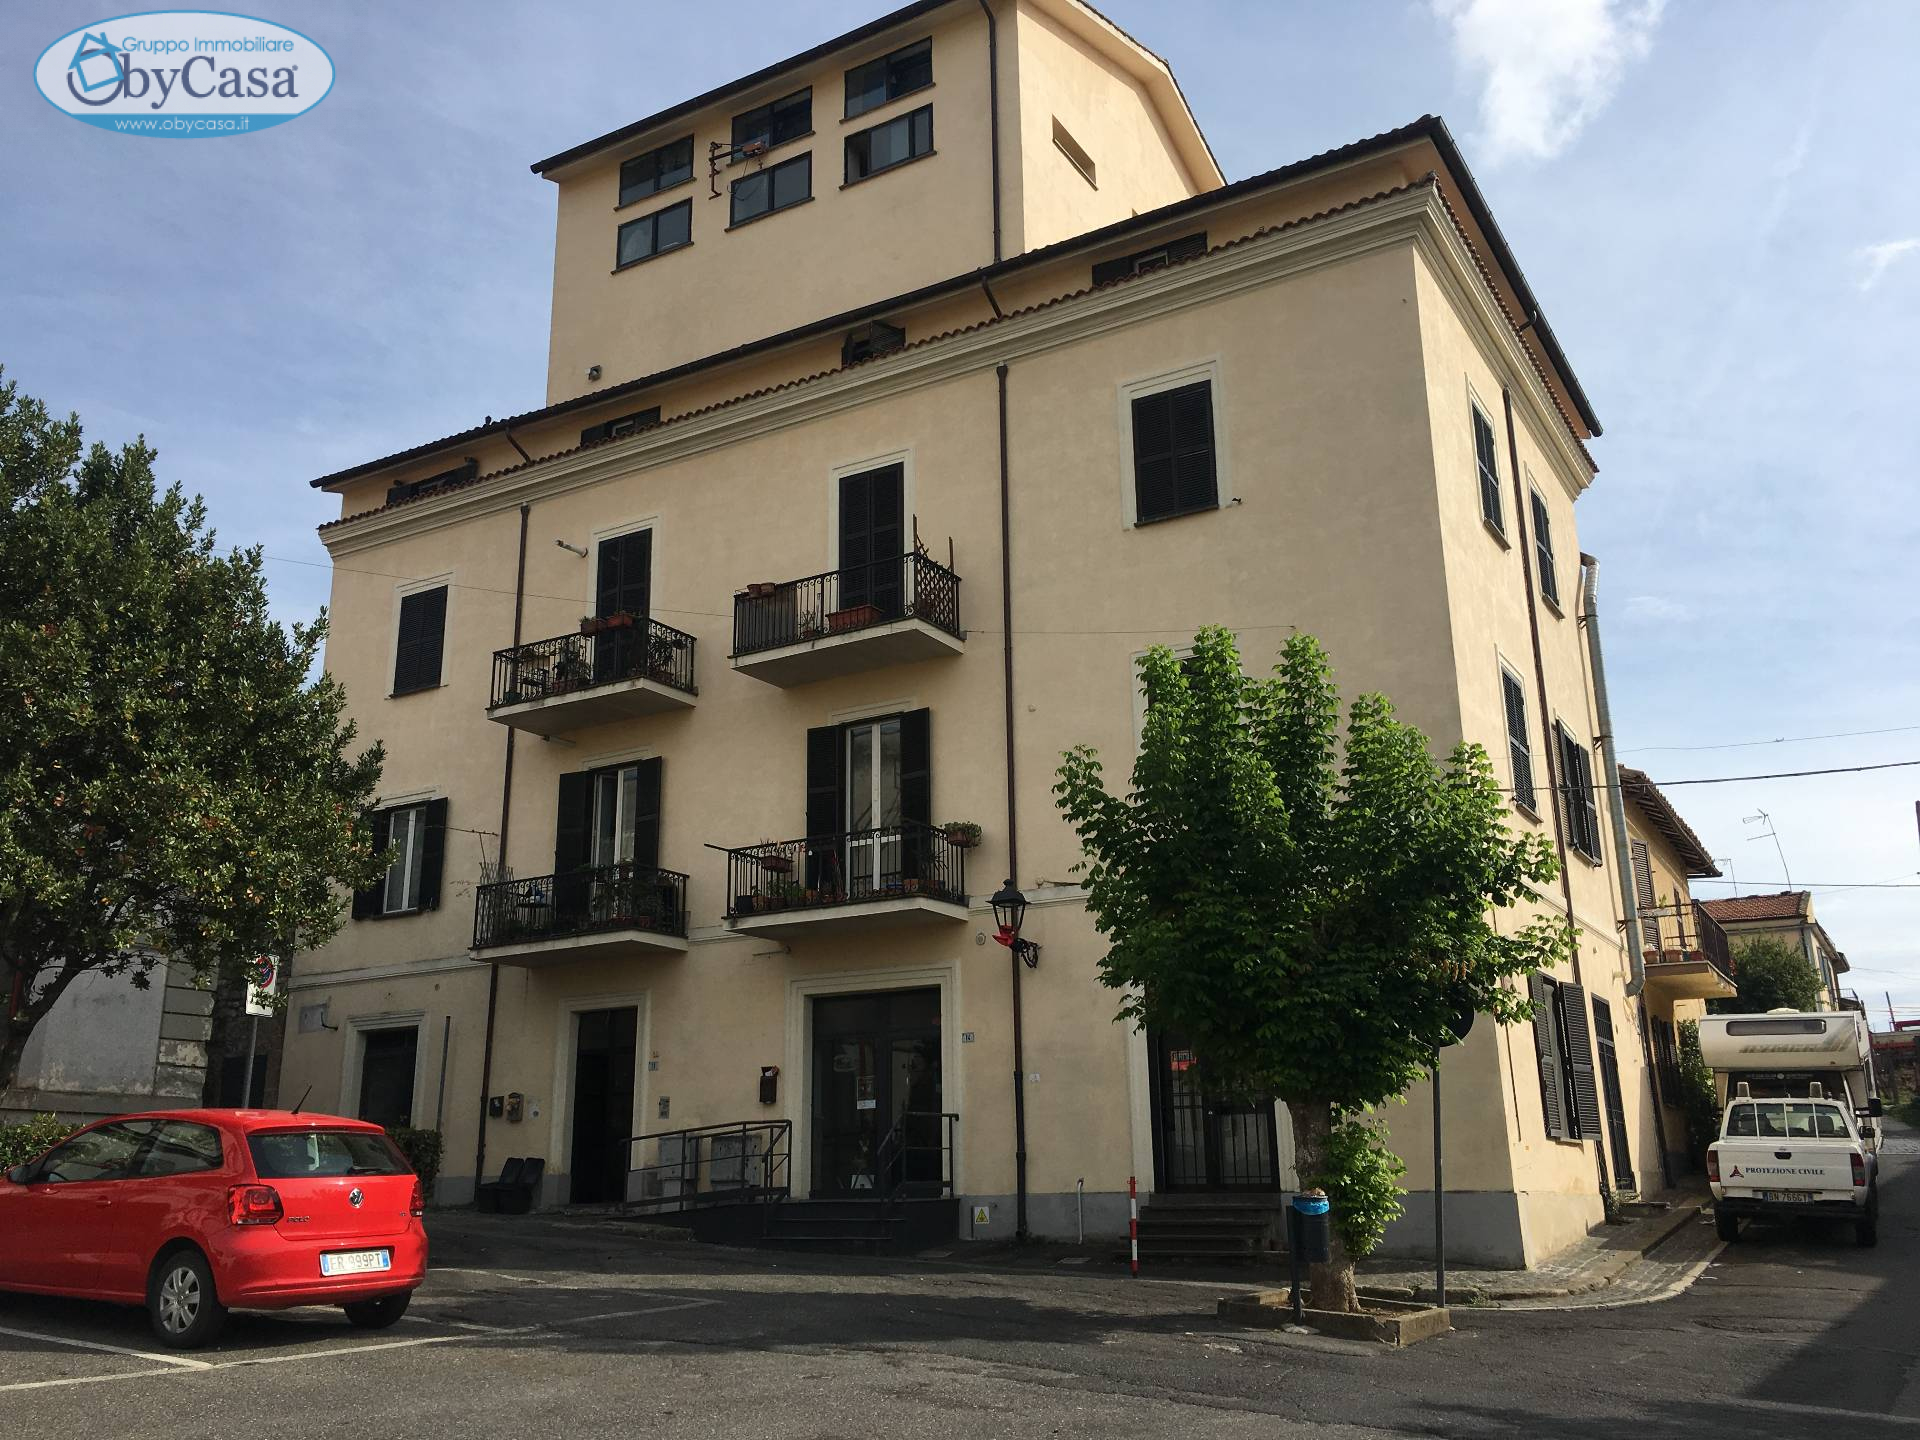 Appartamento in vendita a Canale Monterano, 4 locali, zona Zona: Centro, prezzo € 85.000 | CambioCasa.it